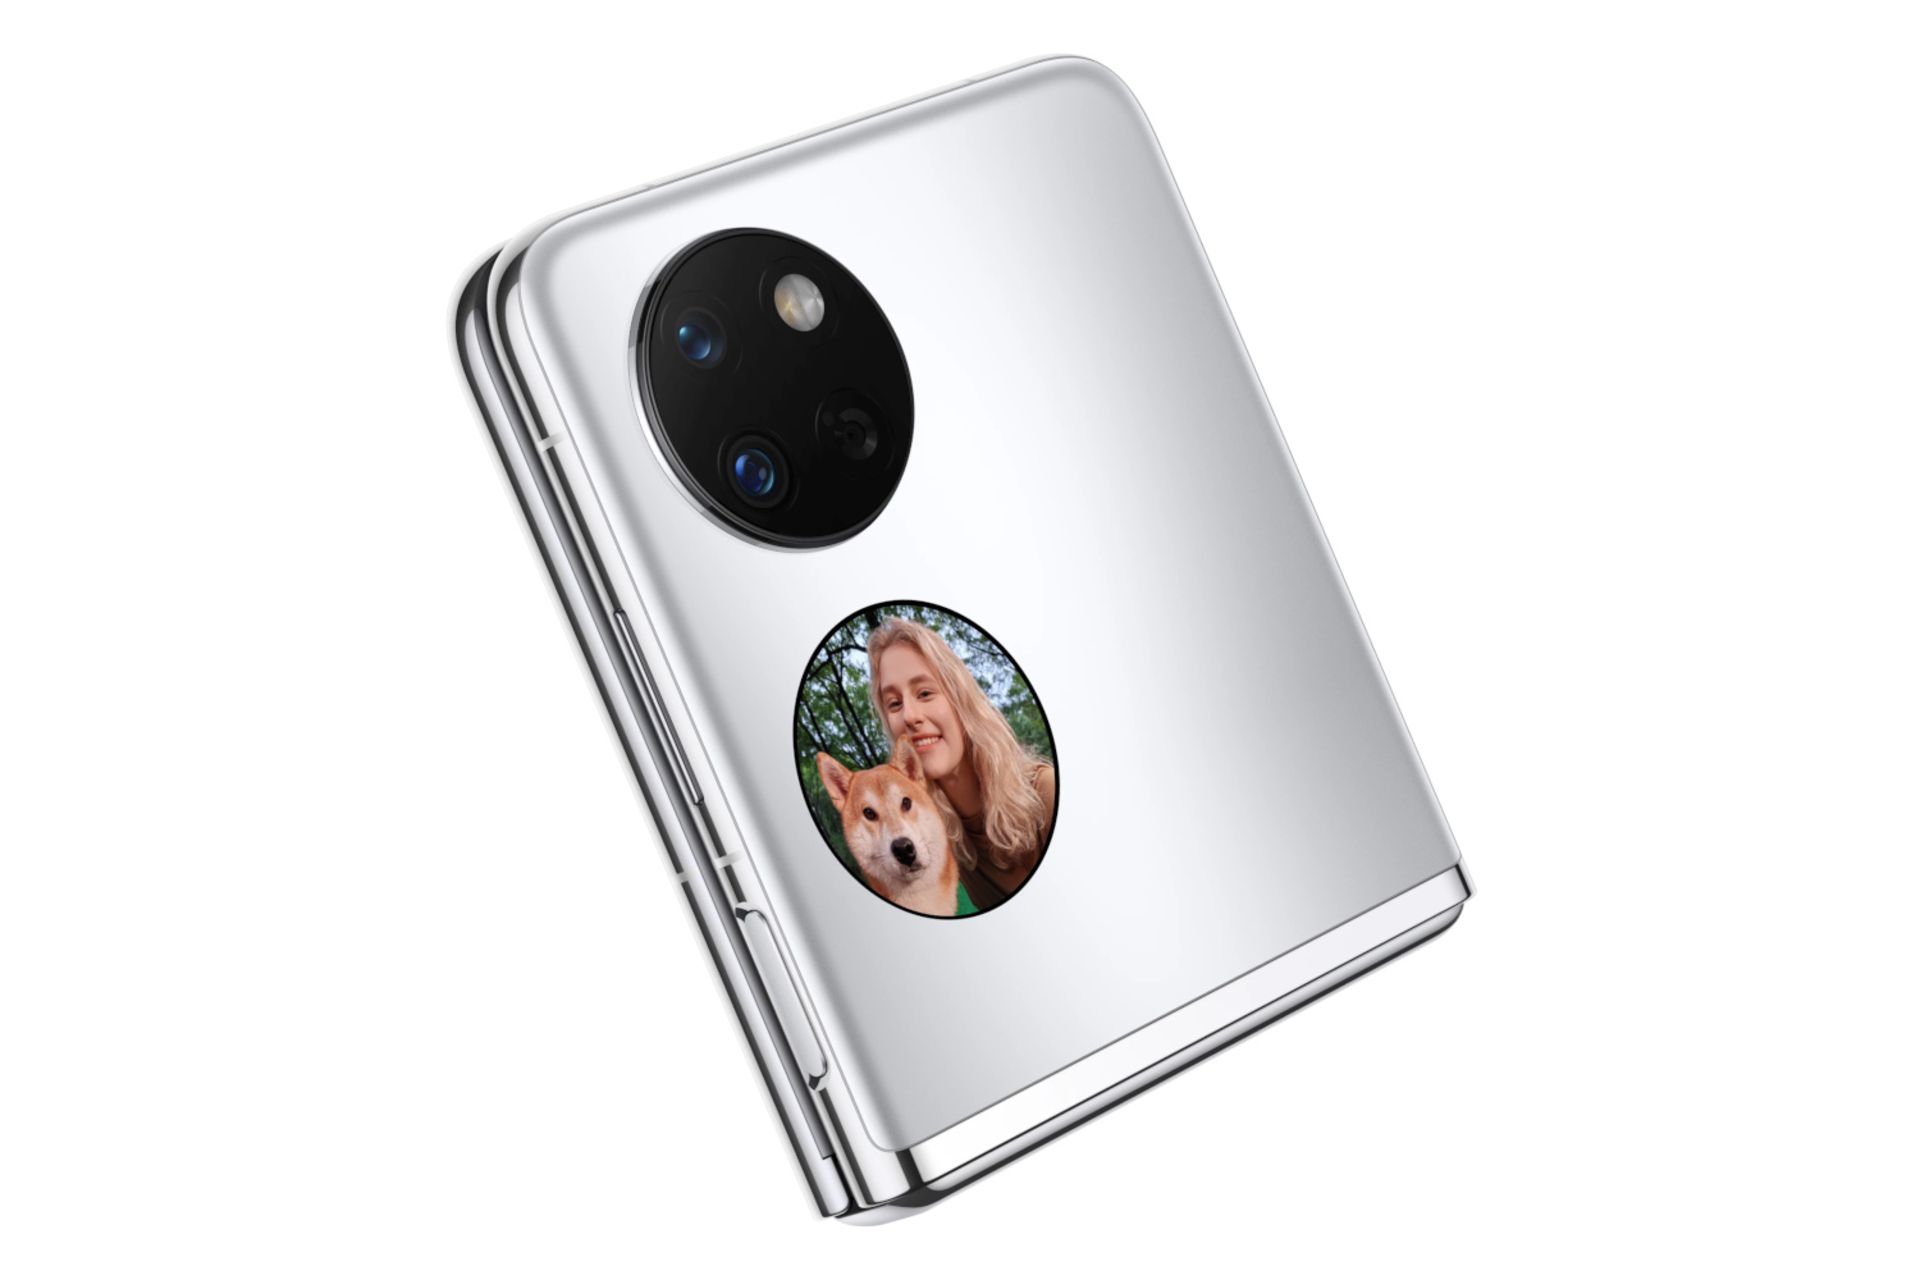 گوشی موبایل پاکت اس هواوی / Huawei Pocket S نقره ای